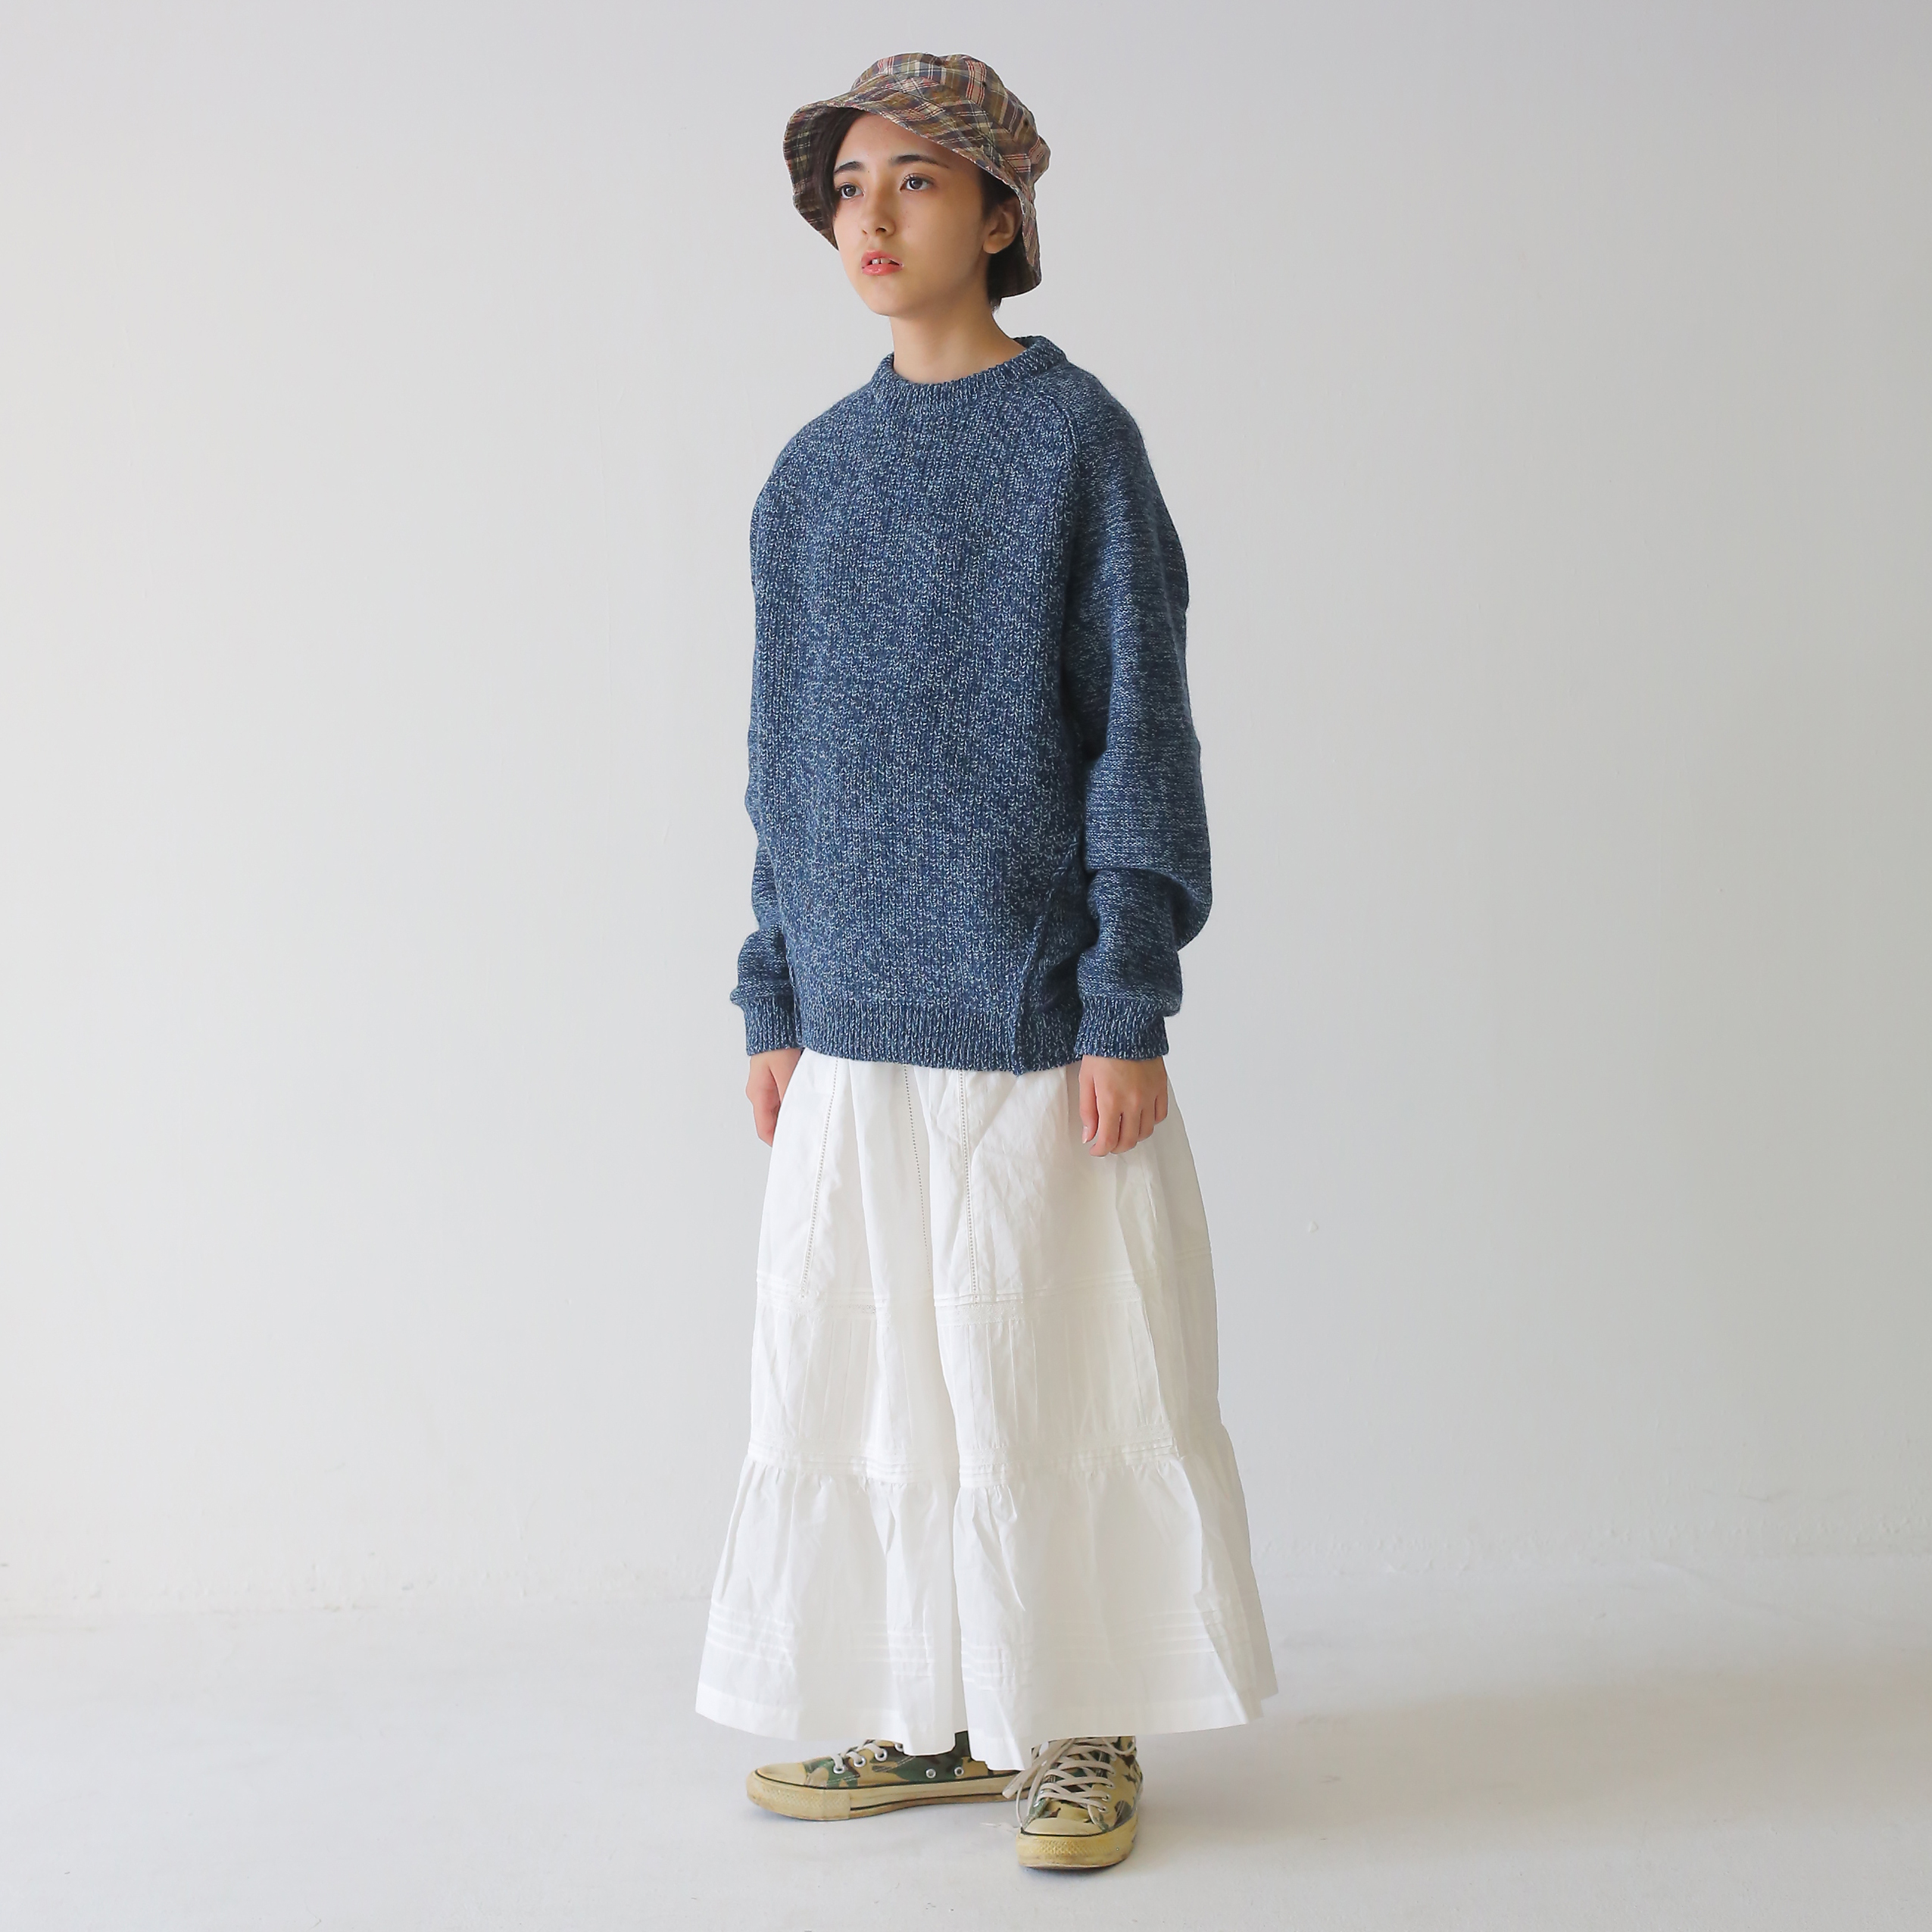 新作プルオーバーは「リバーシブル」。裏も、表も、どっちも着れます。 | toiro knitwear